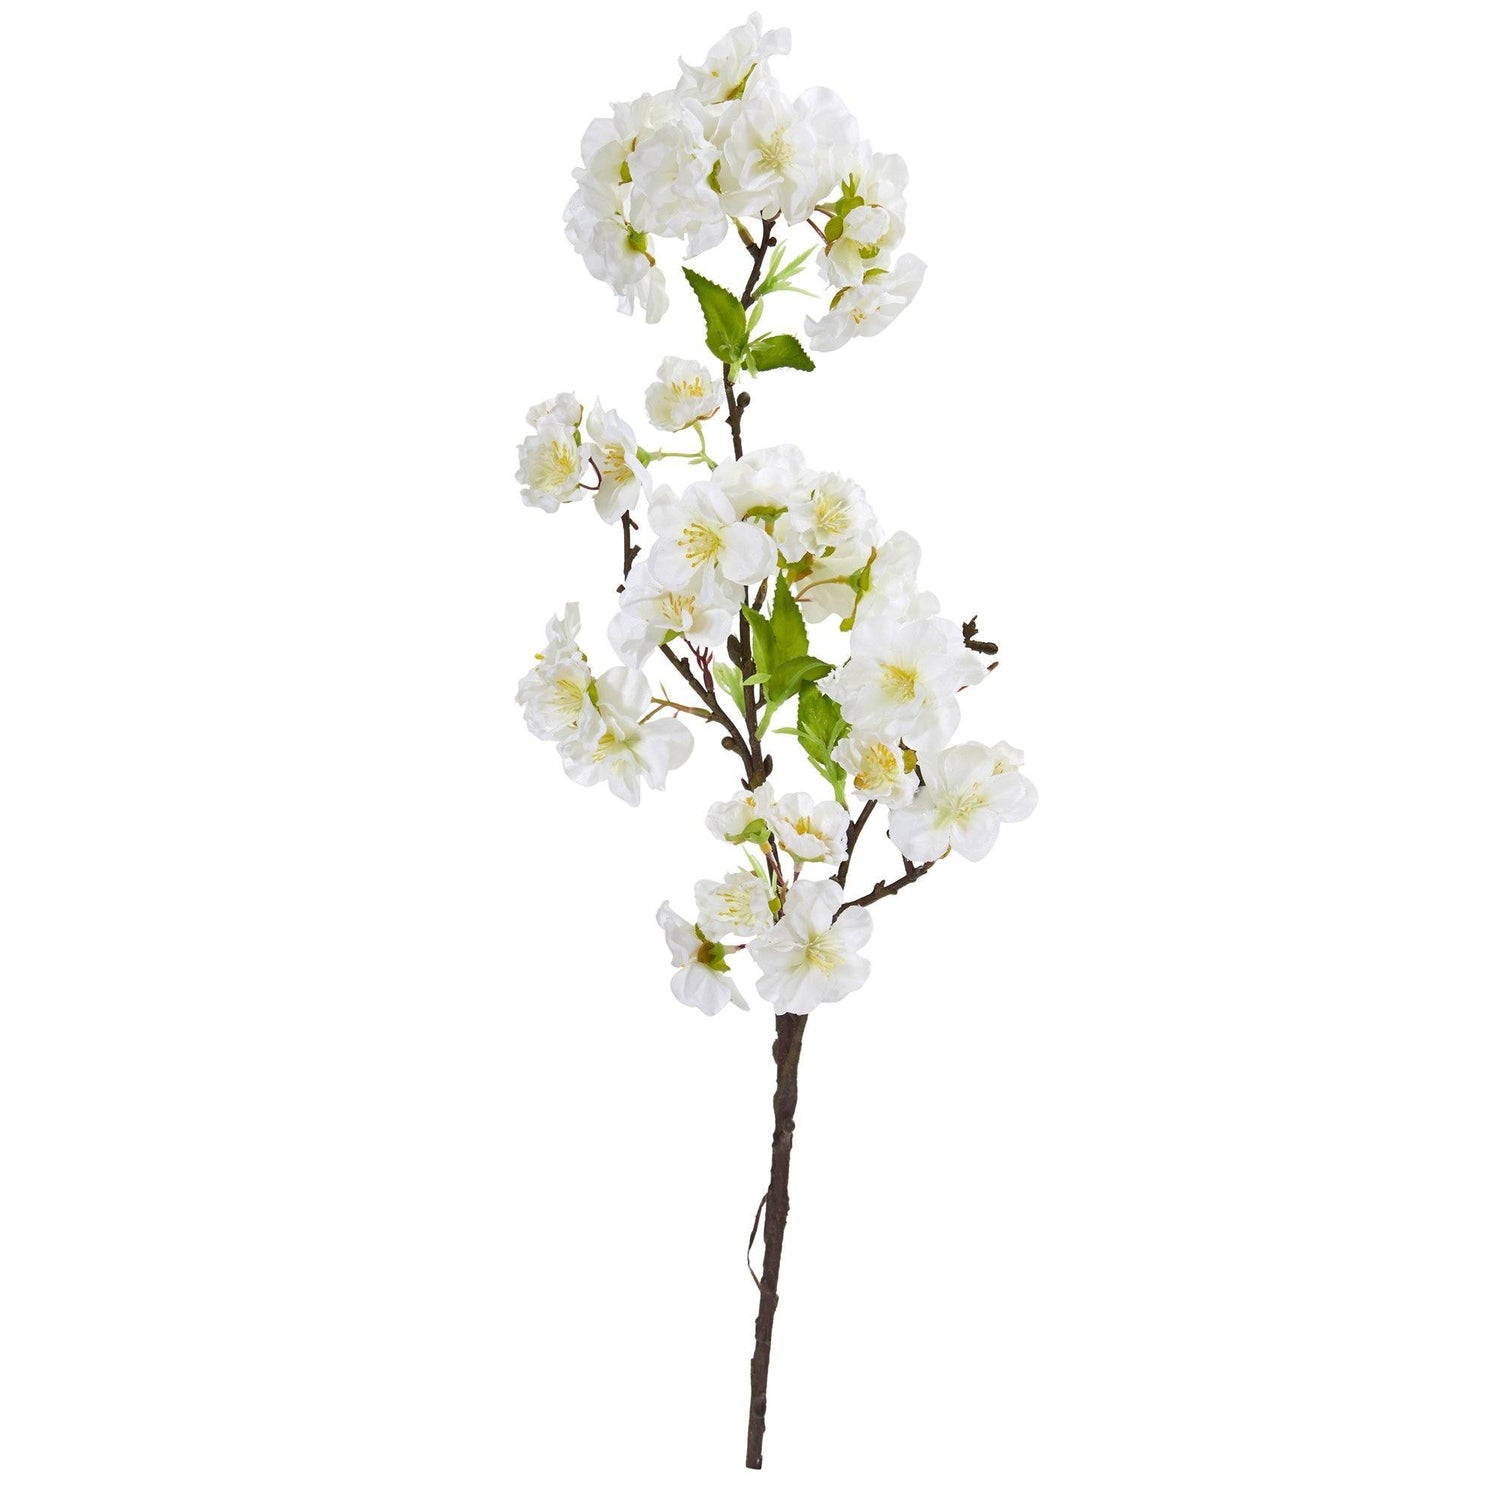 18” Cherry Blossom Artificial Flower (Set of 12)